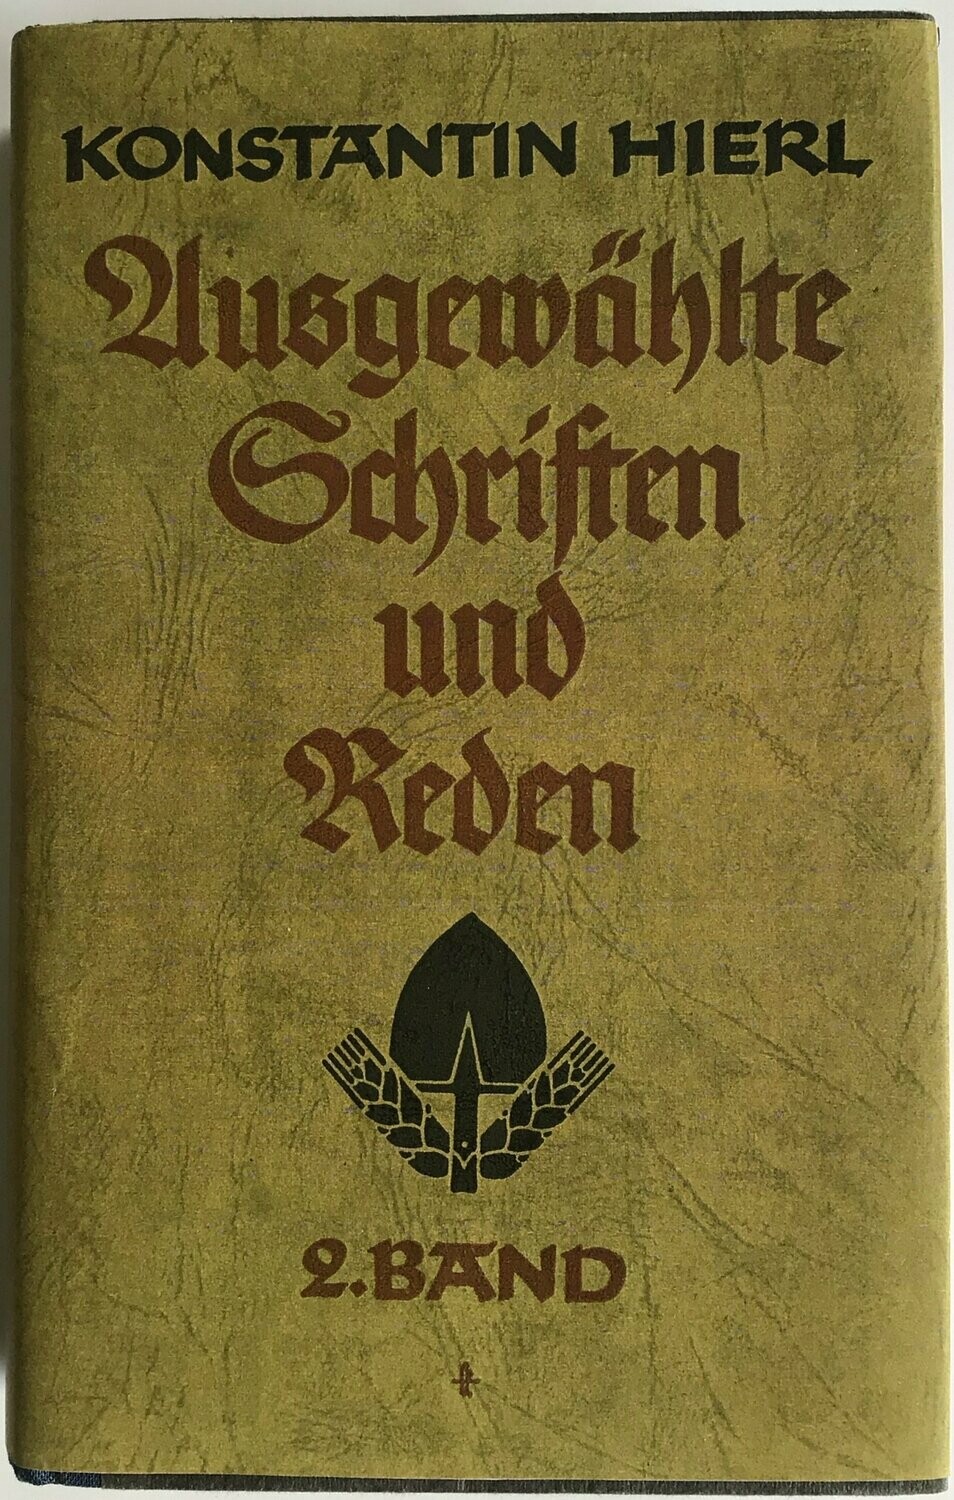 Konstantin Hierl - Ausgewählte Schriften und Reden - Band 2 - Späte Halbleinenausgabe (2. Auflage) aus 1943 mit Schutzumschlag (Kopie)